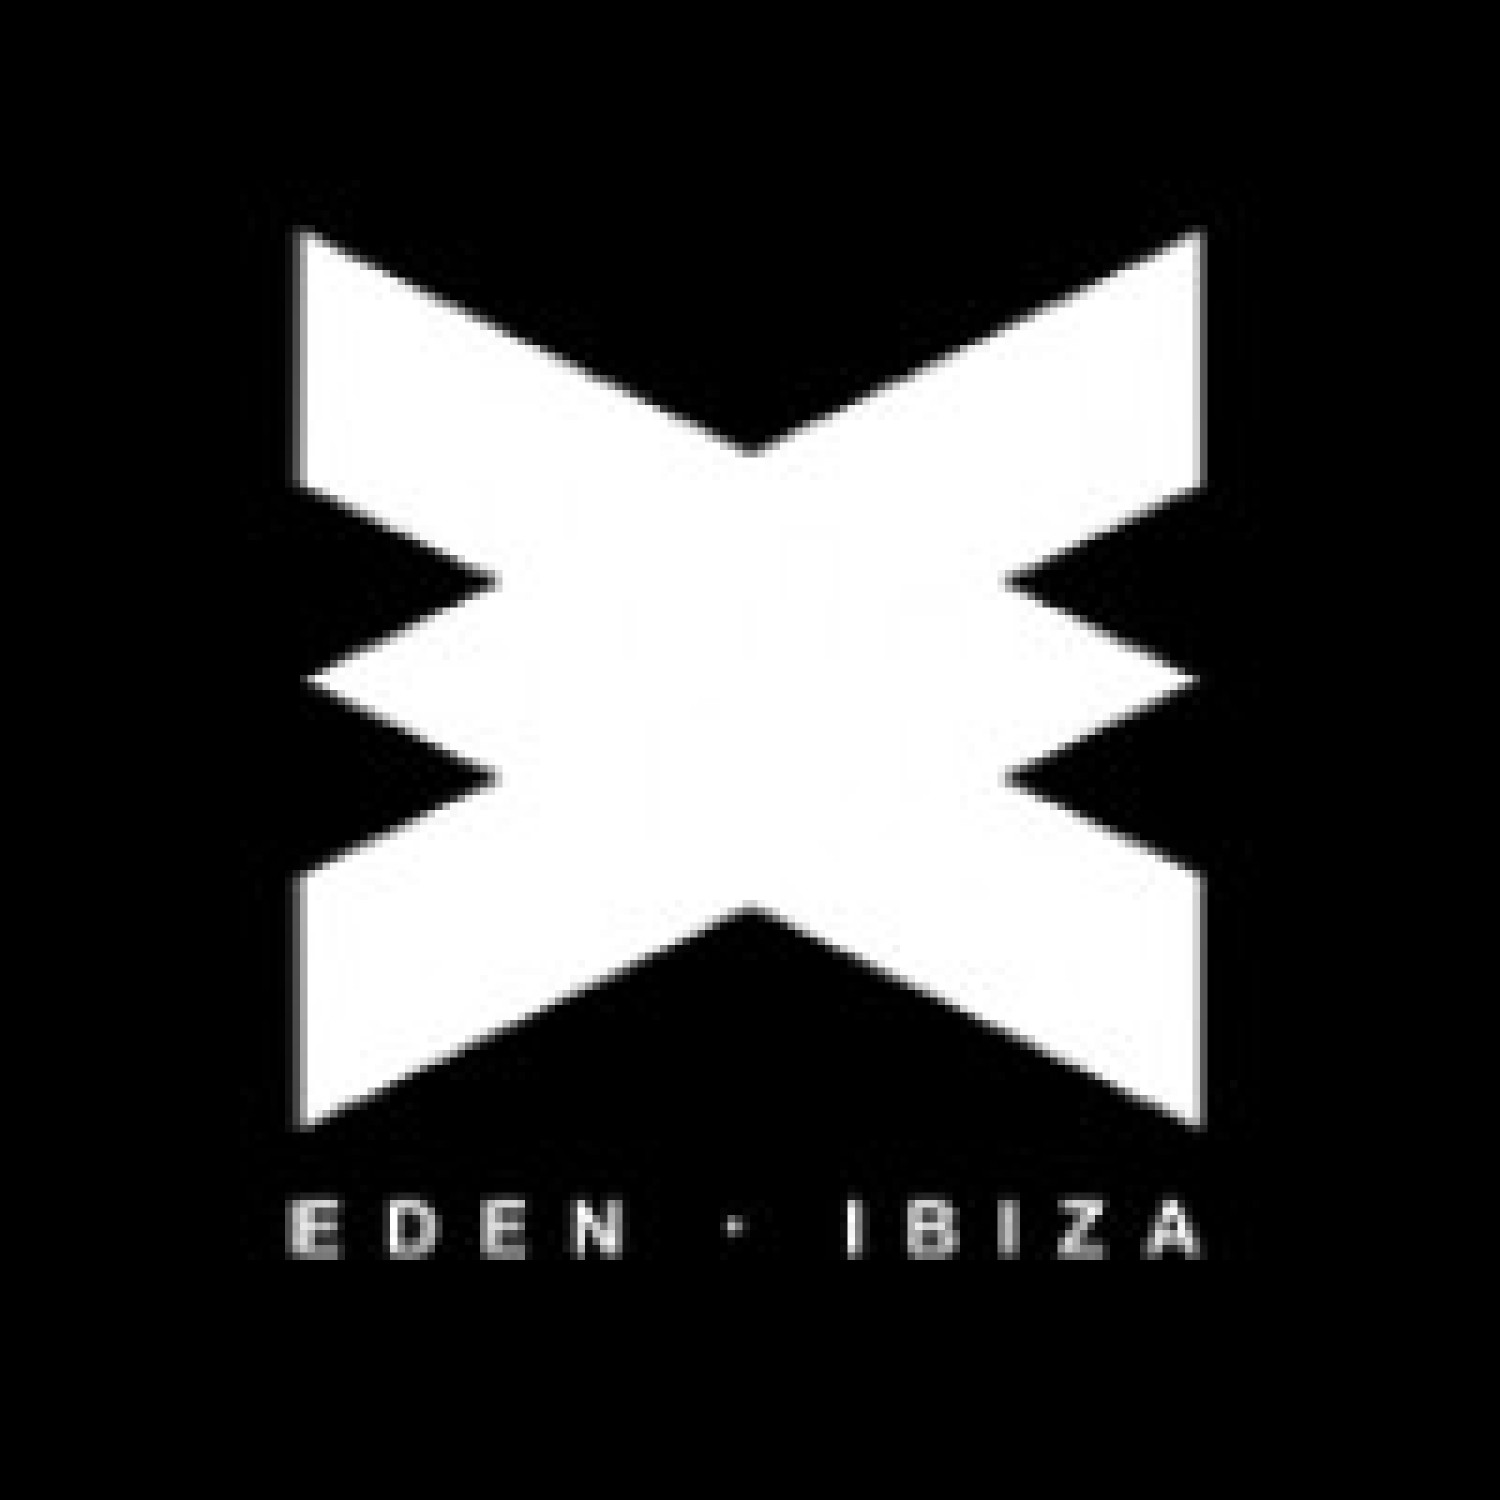 Eden Ibiza